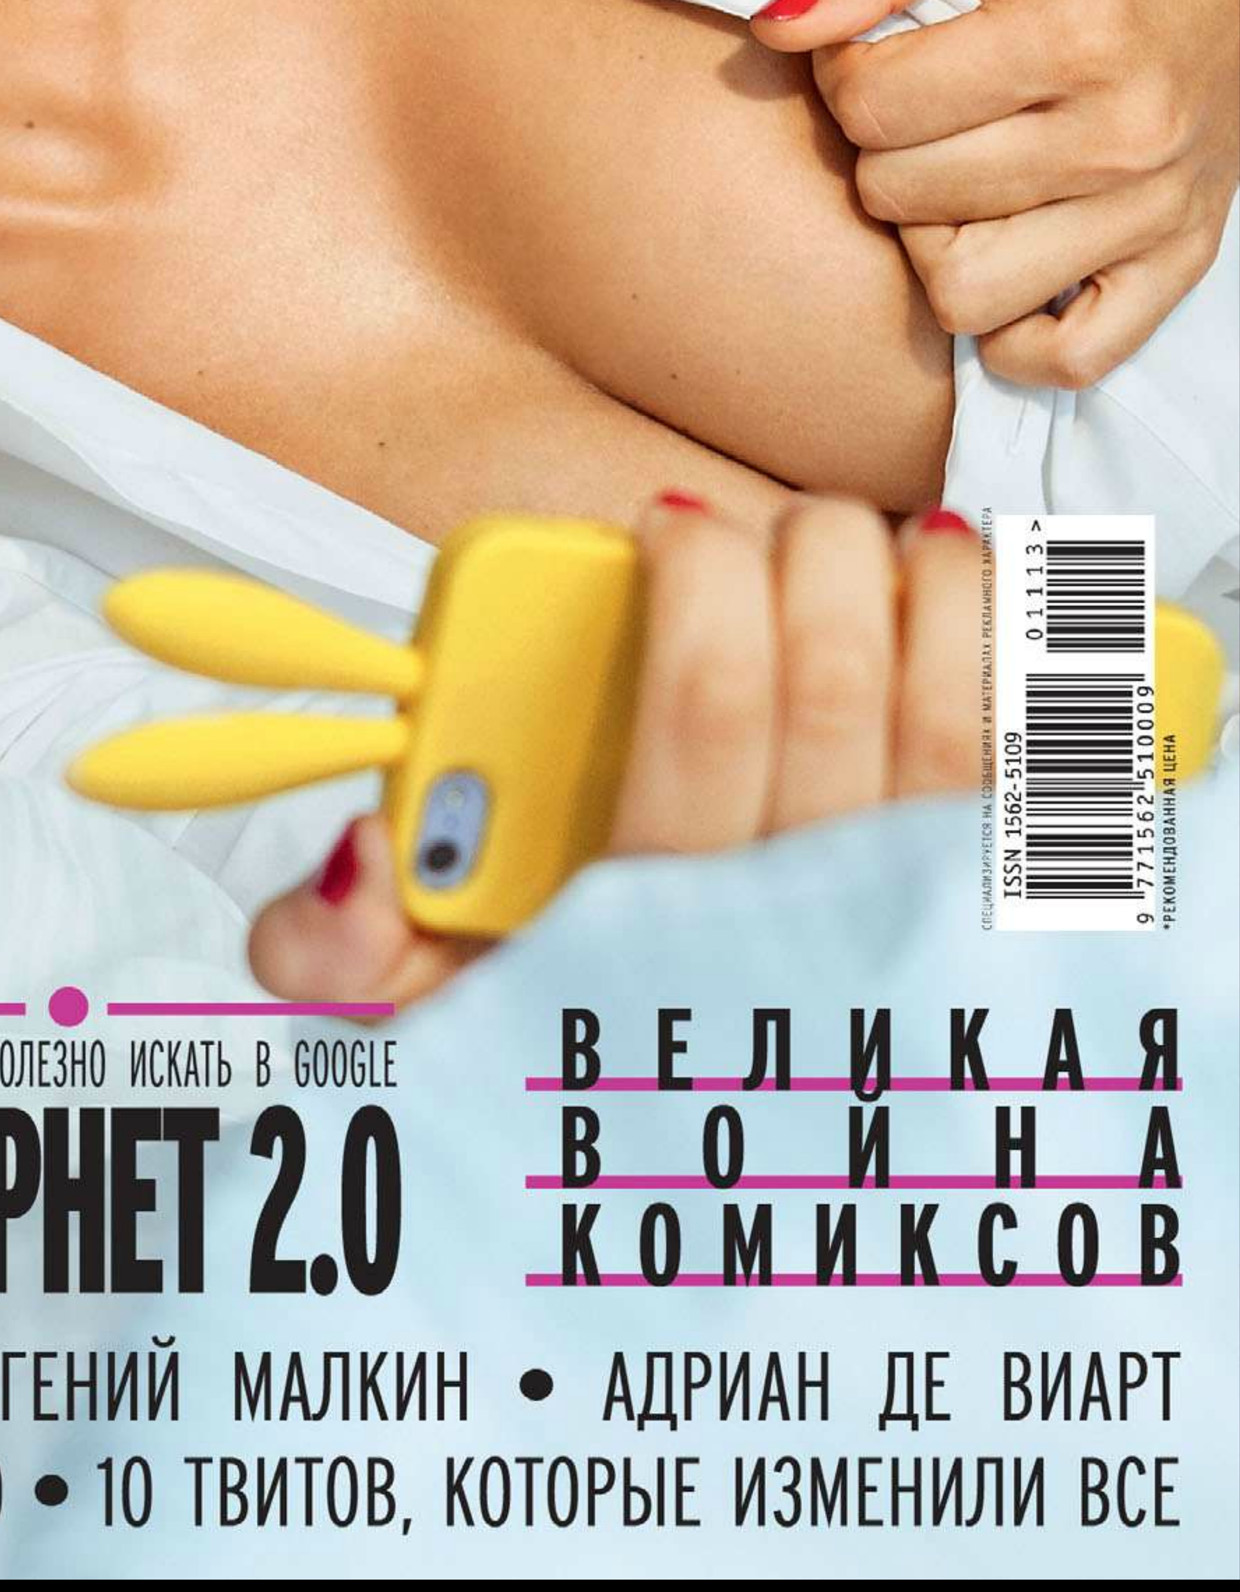 эротика в российской рекламе фото 55